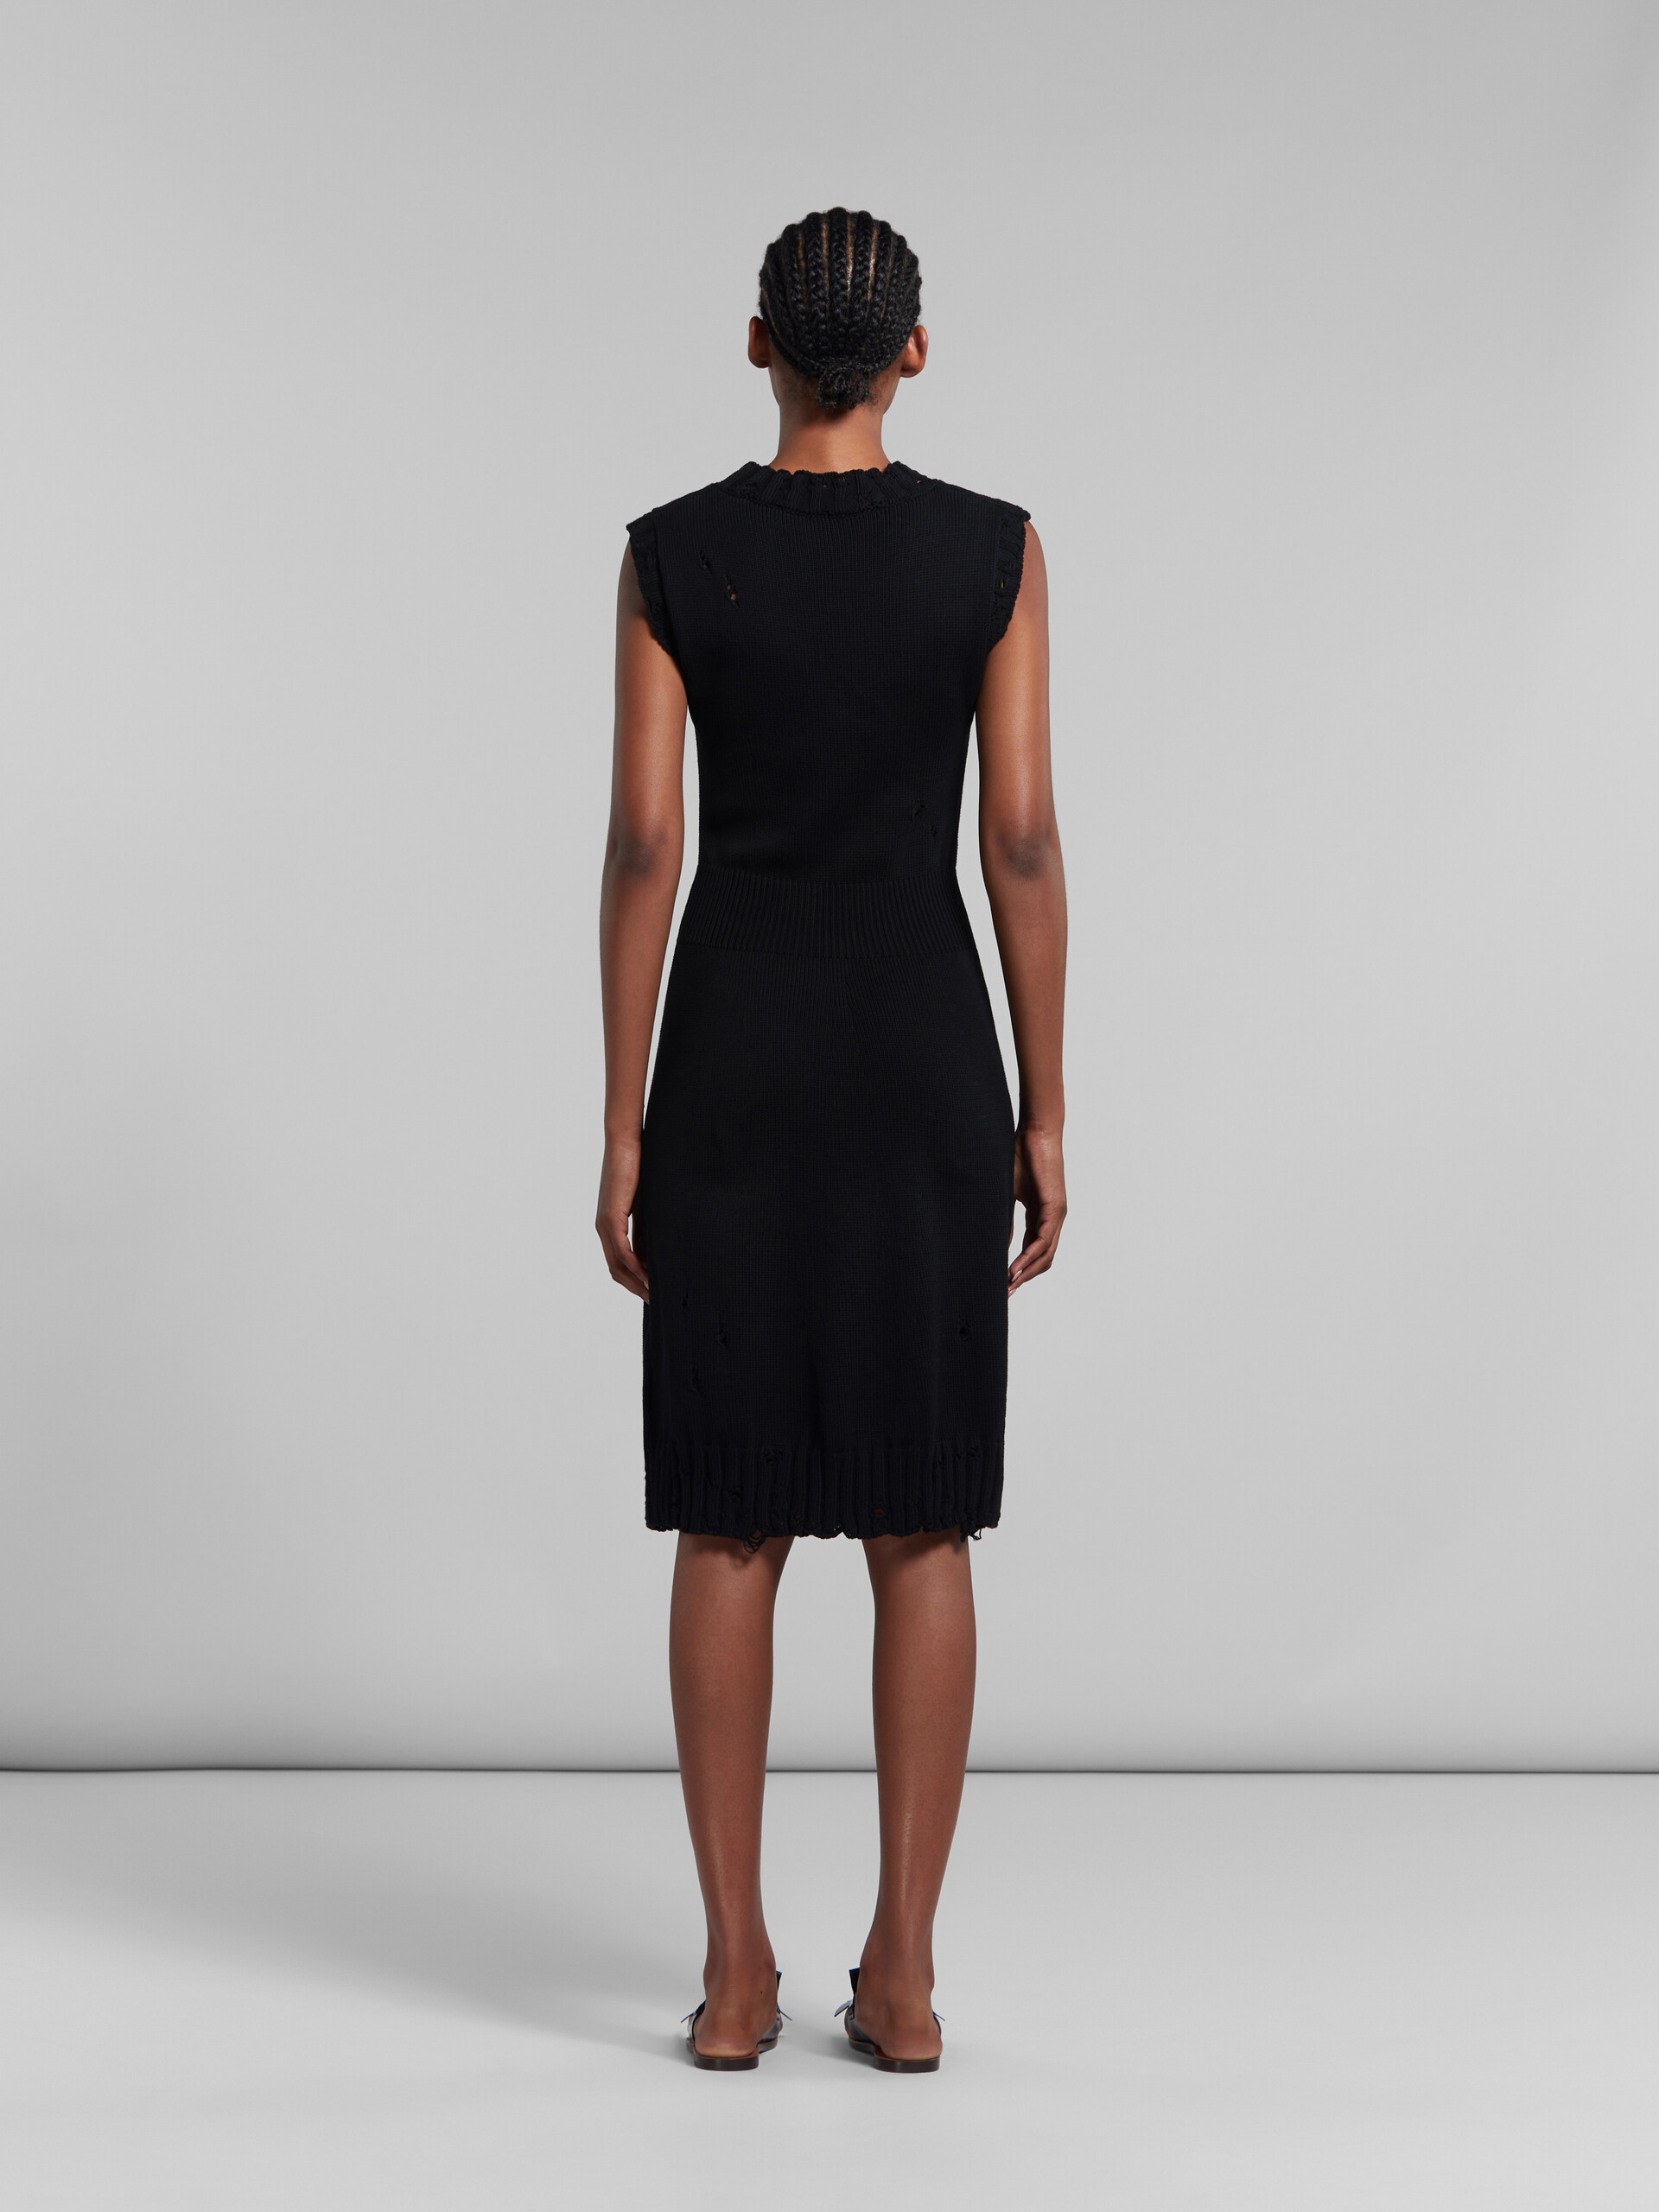 ブラック ディシュベルドコットン製ニットドレス - ドレス - Image 3